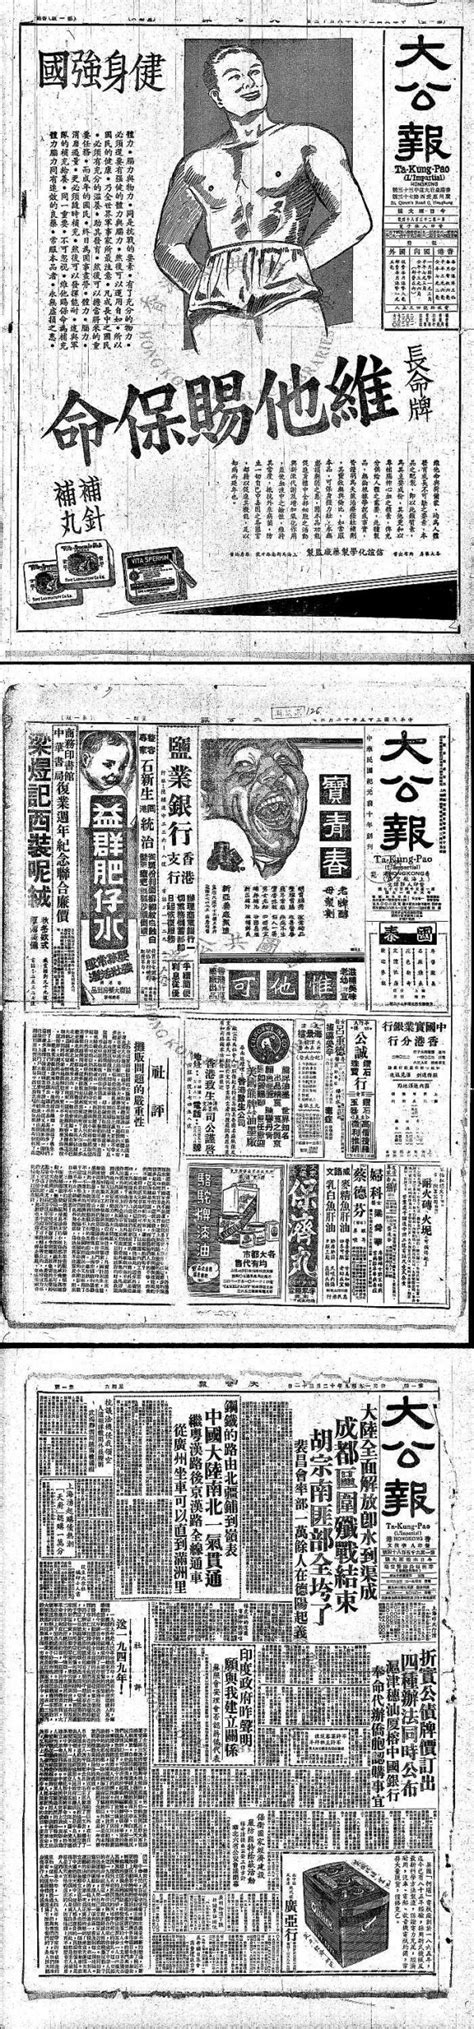 老报纸-香港《大公报》全集 1938-1949年 电子版 时光图书馆